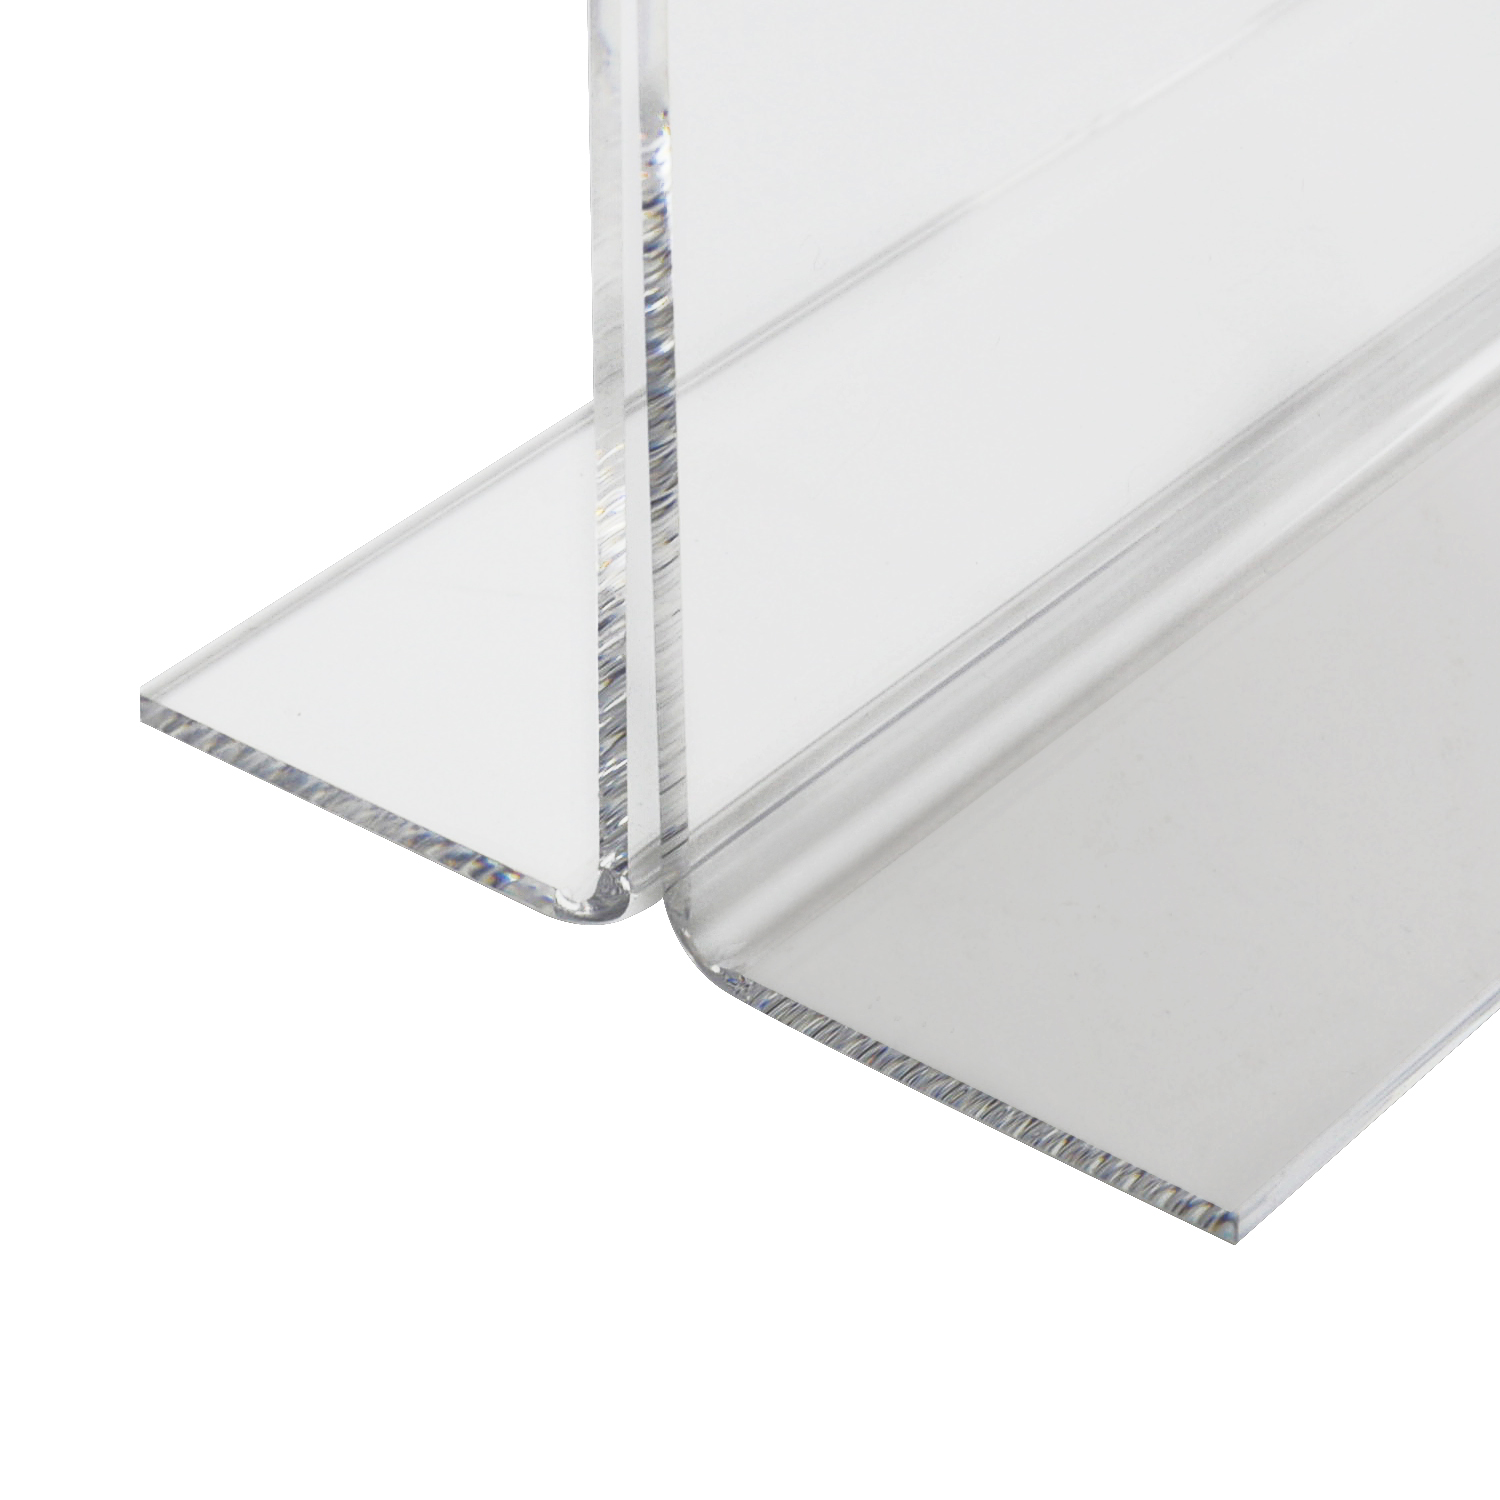 Tischaufsteller oder Menükarte aus Acryl für DIN A5 im Querformat von HMF mit den Maßen 21.4 x 15.8 x 7.5 cm